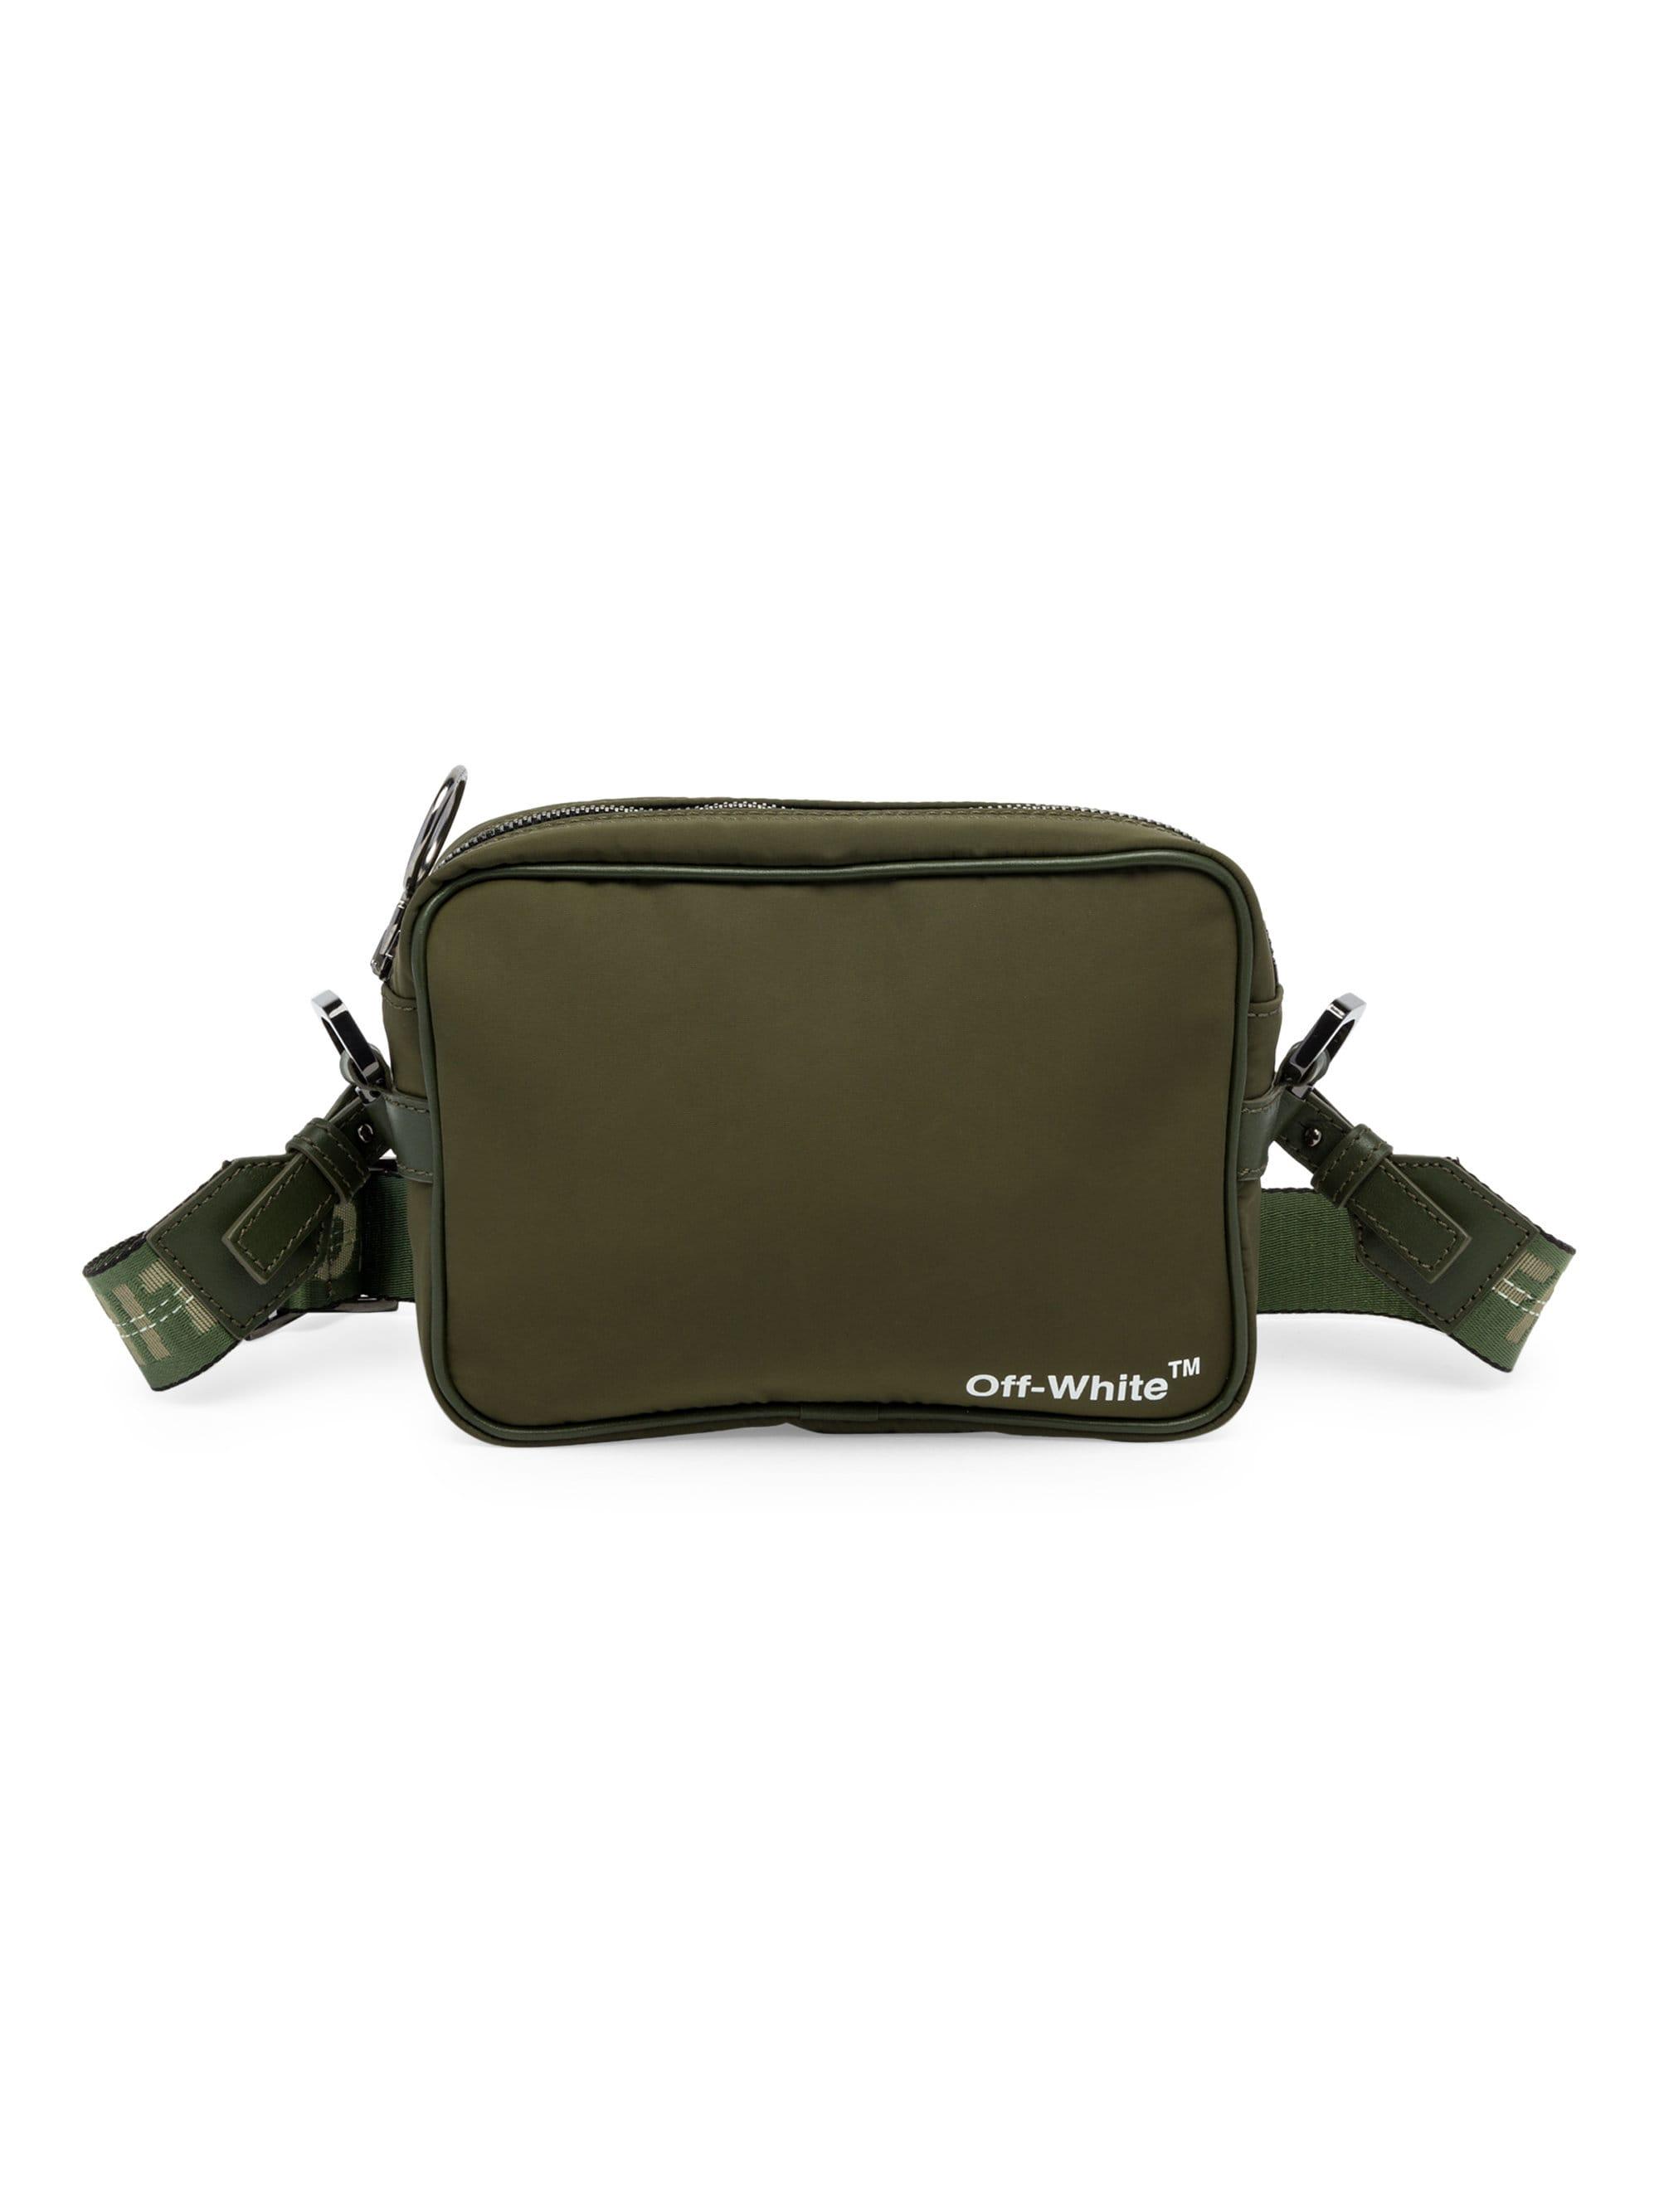 Off-White c/o Virgil Abloh Logo Strap Crossbody Bag in Military Green (Green) for Men - Lyst